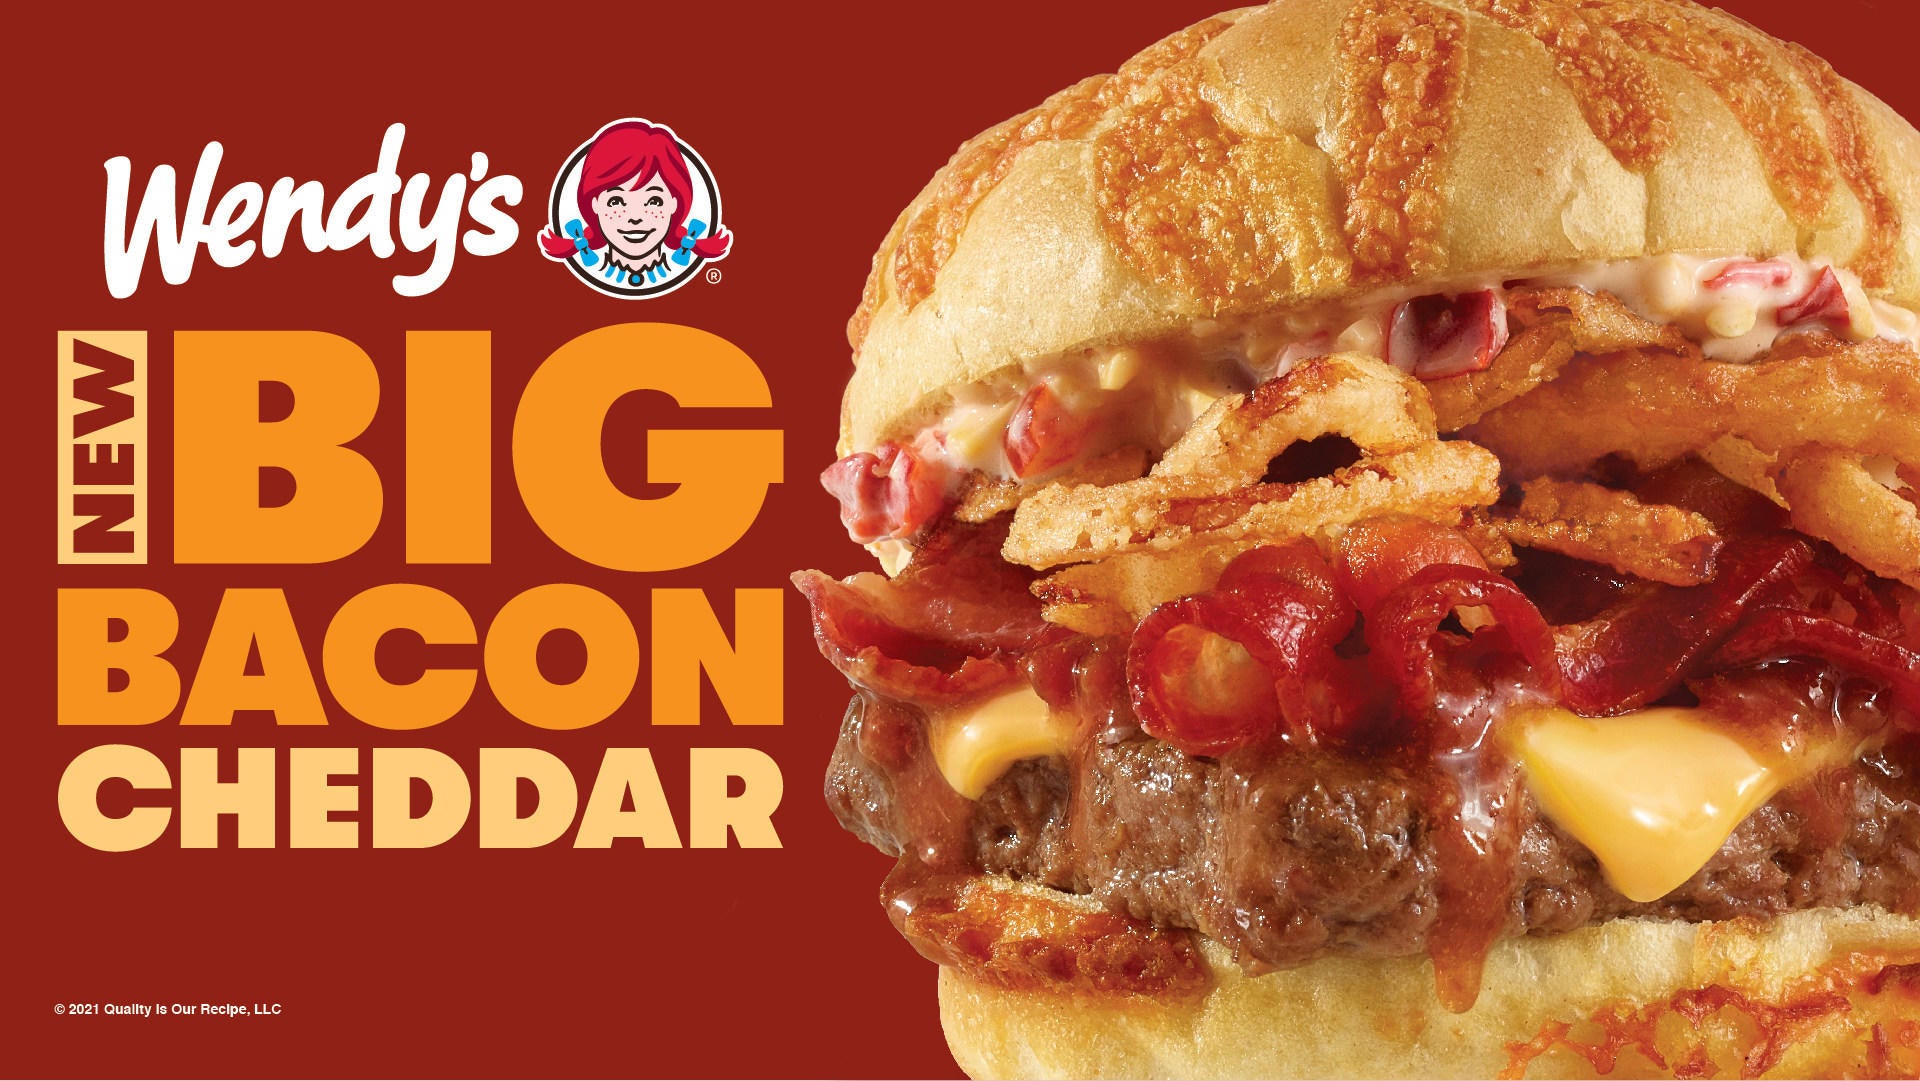 wendys-big-bacon-cheddar-cheeseburger.jpg